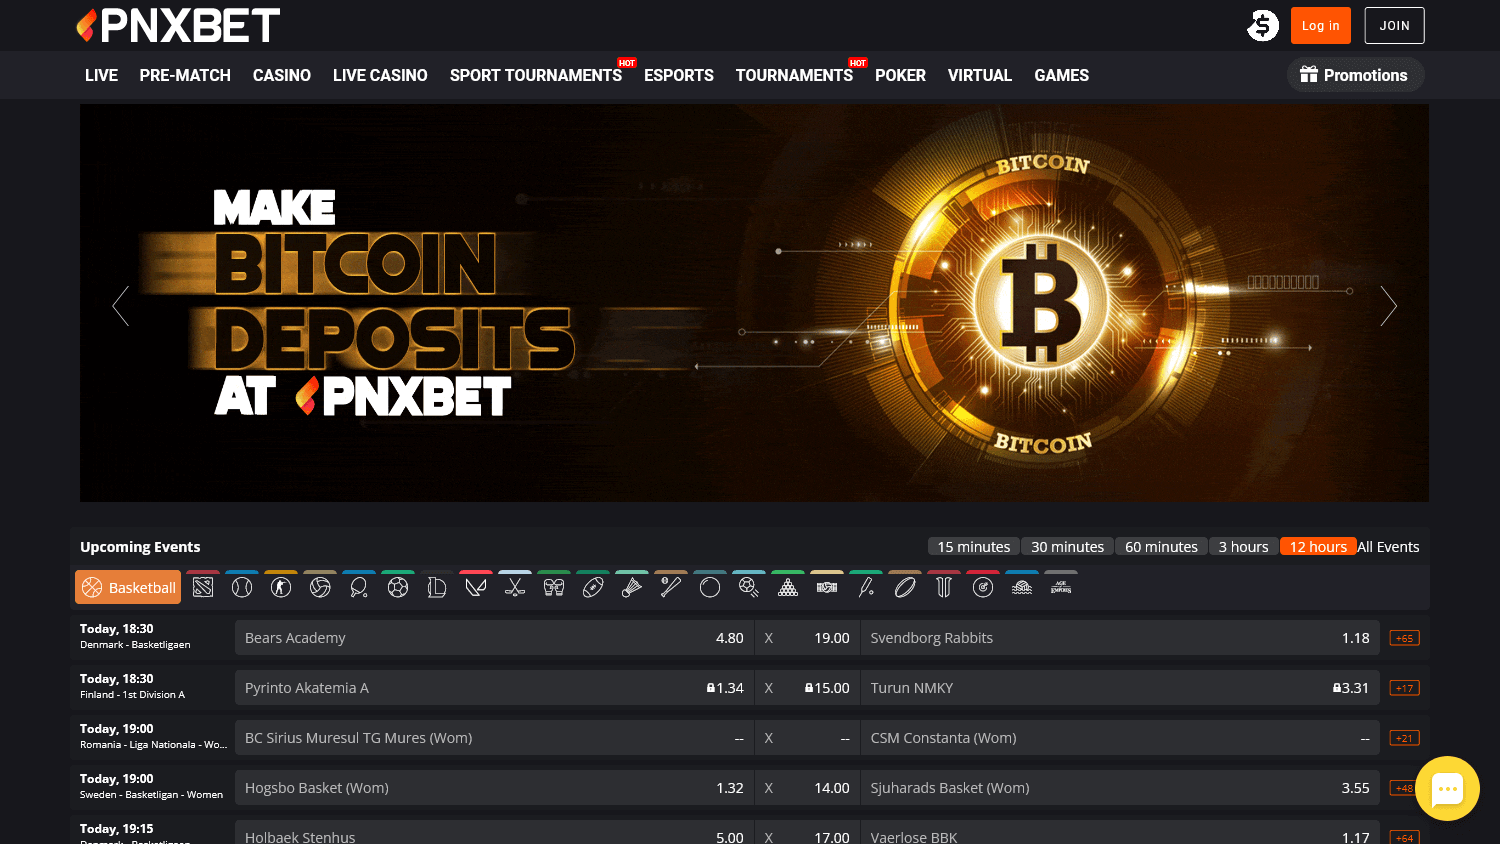 pnxbet_casino_homepage_desktop